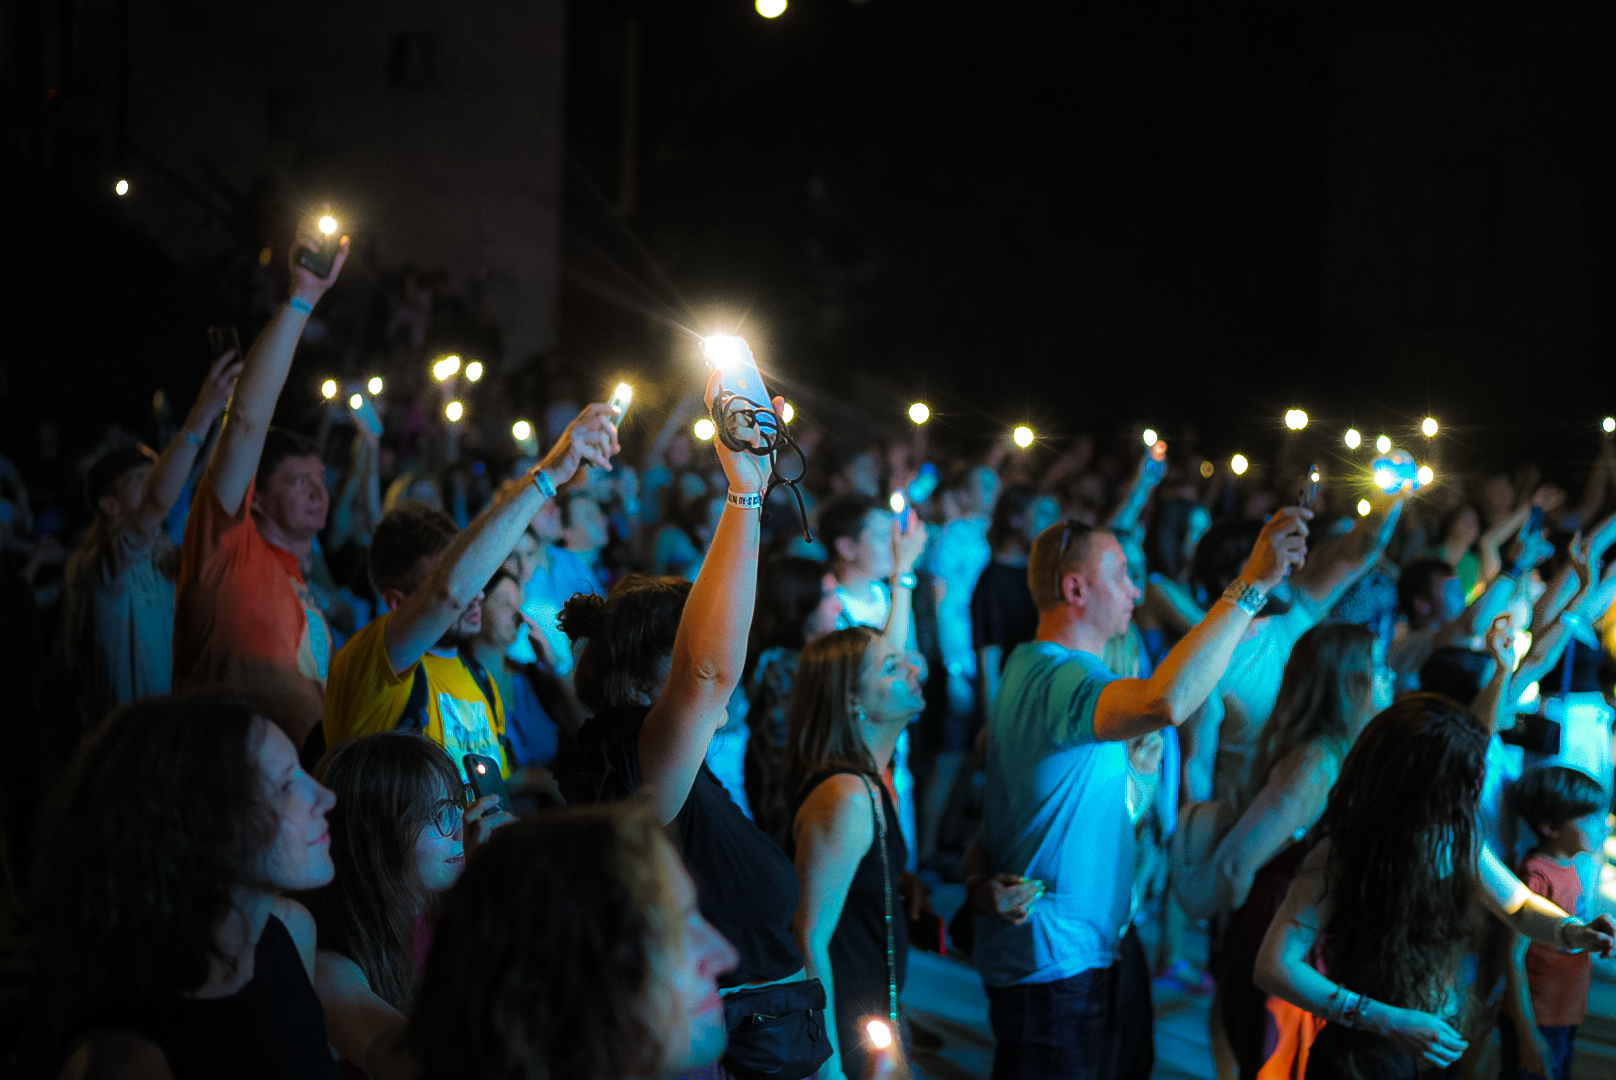 Trupa Snails a susținut primul concert la Chișinău, după o pauză de 10 ani. Peste 400 de oameni au dansat pe melodiile îndrăgitei formații